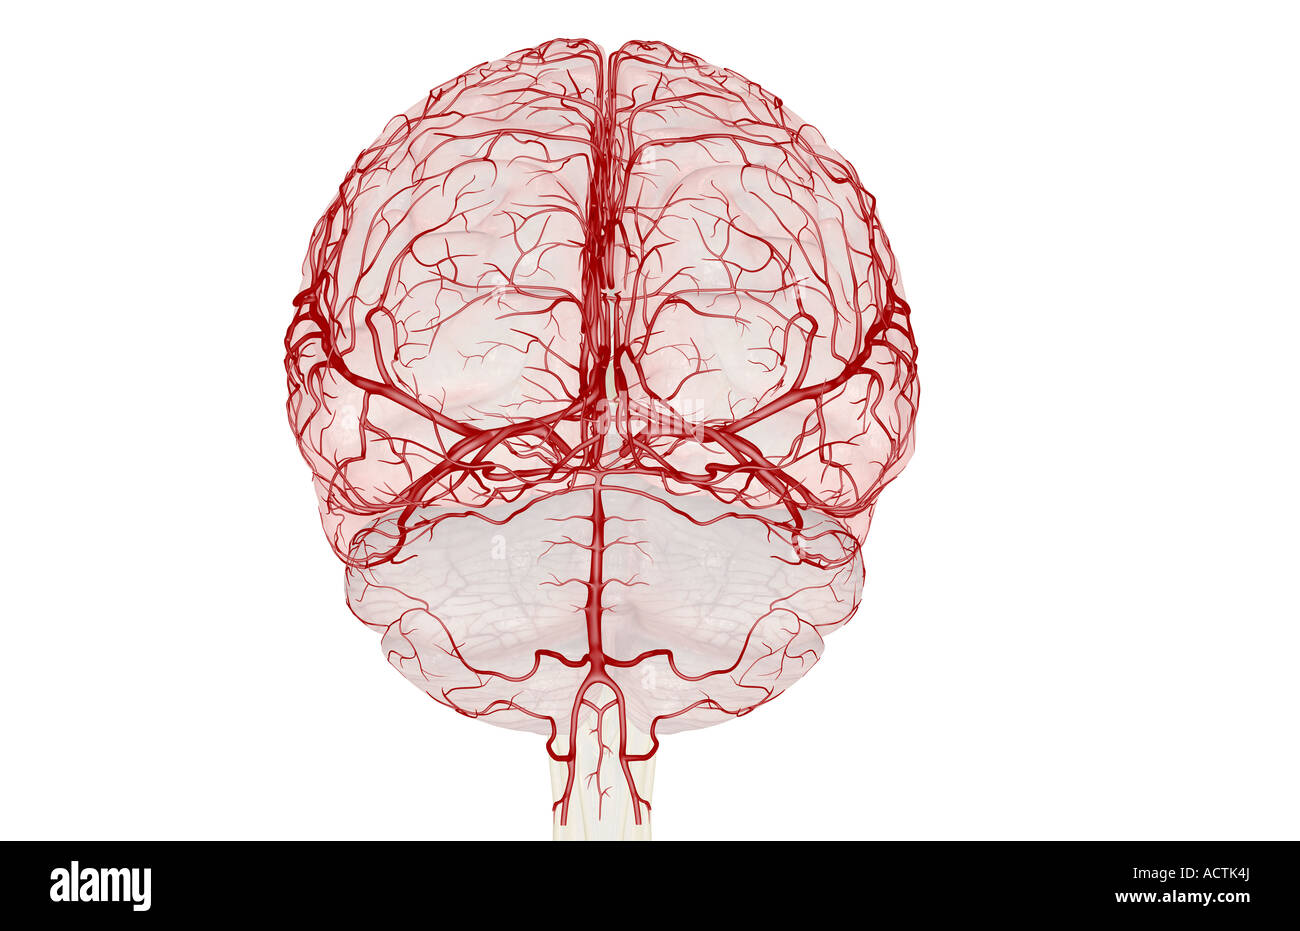 Brain 103. Дуплекс головы. Сосудистые сплетения головного мозга.